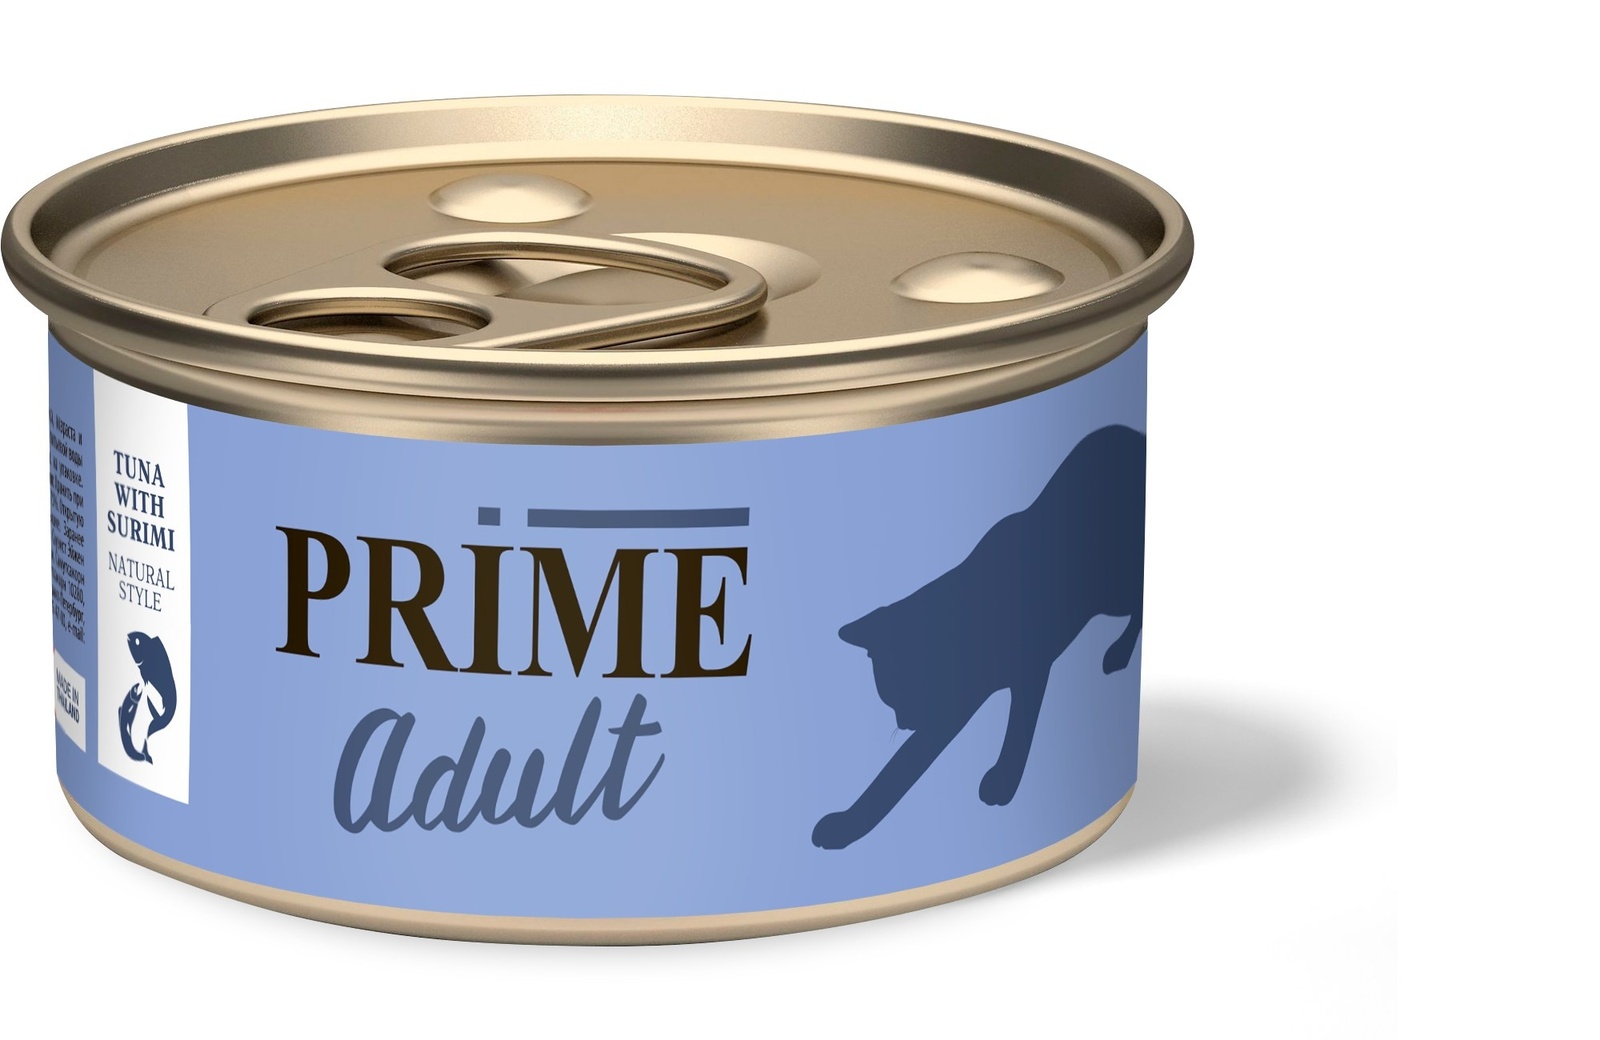 Prime Prime консервы для кошек тунец с сурими в собственном соку (70 г) автоподатчик adf в сборе hp lj m127 cz181 60110 cz181 60110